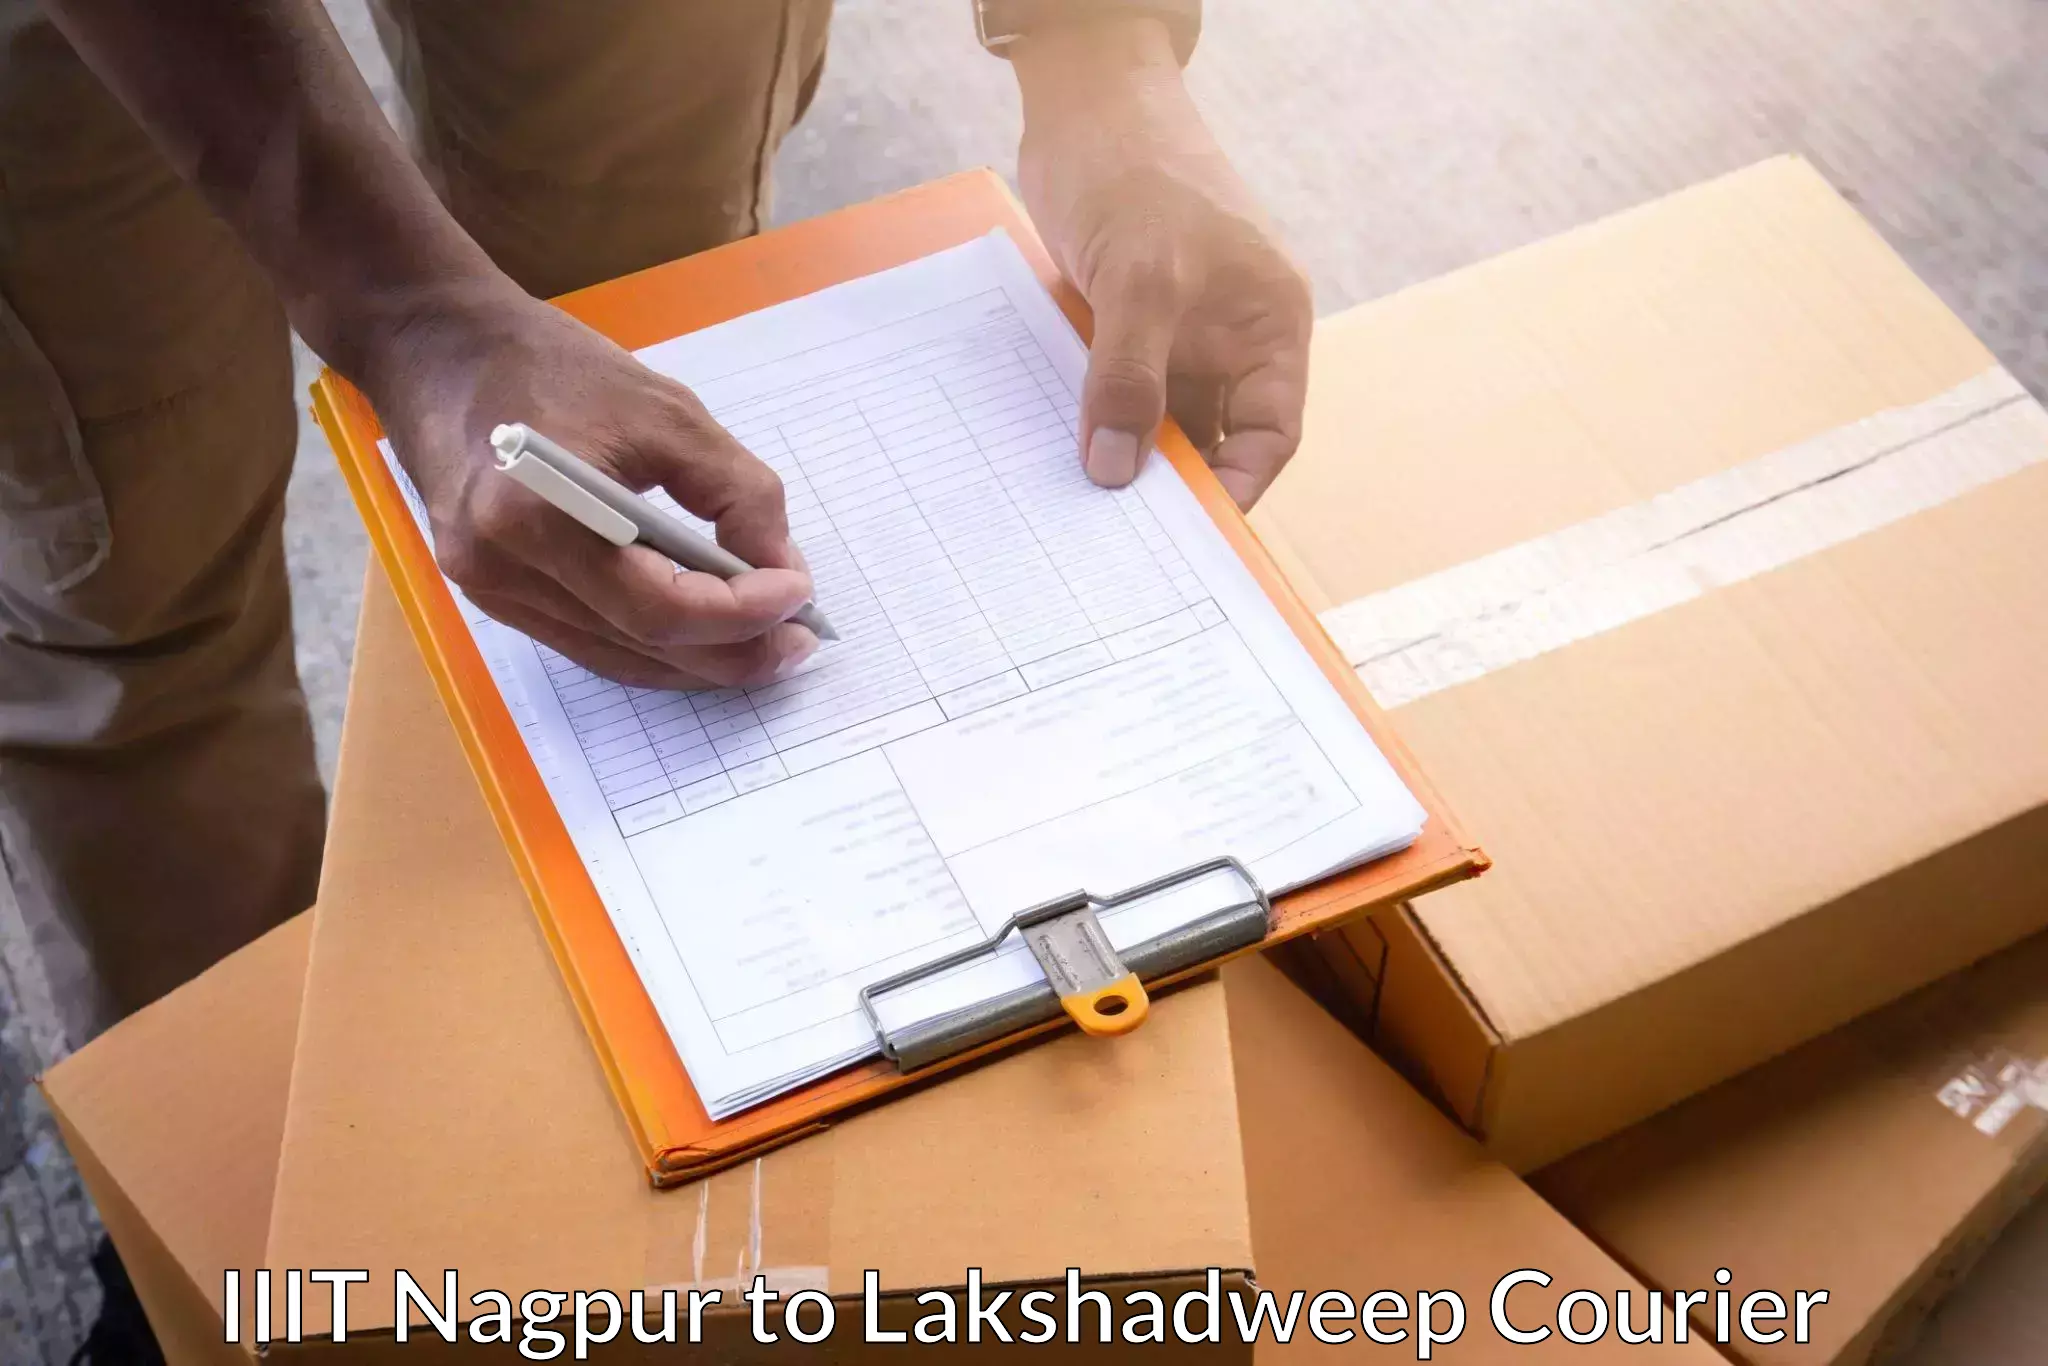 Comprehensive parcel tracking IIIT Nagpur to Lakshadweep